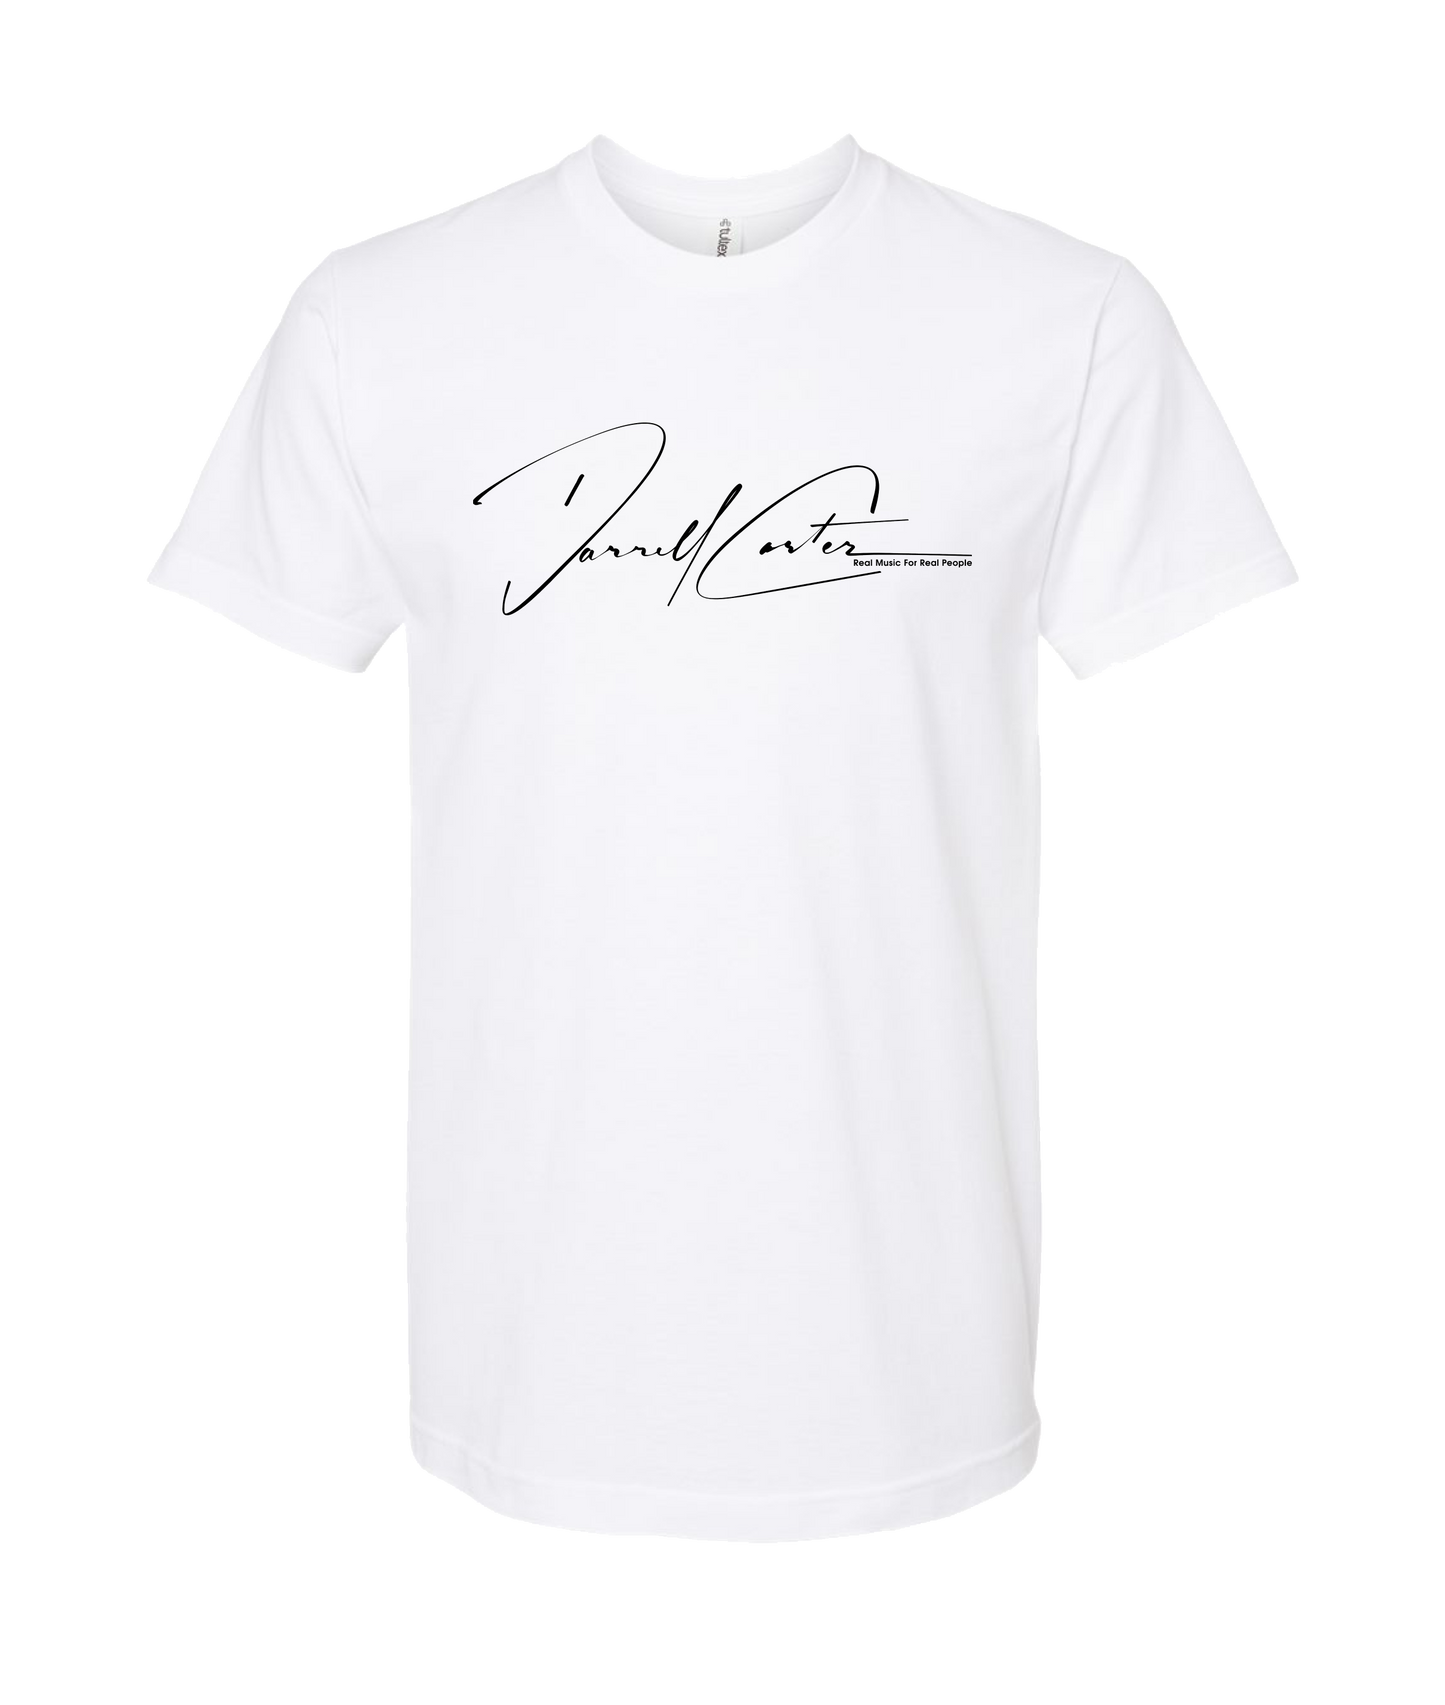 Dsplita - Black Text - White T Shirt